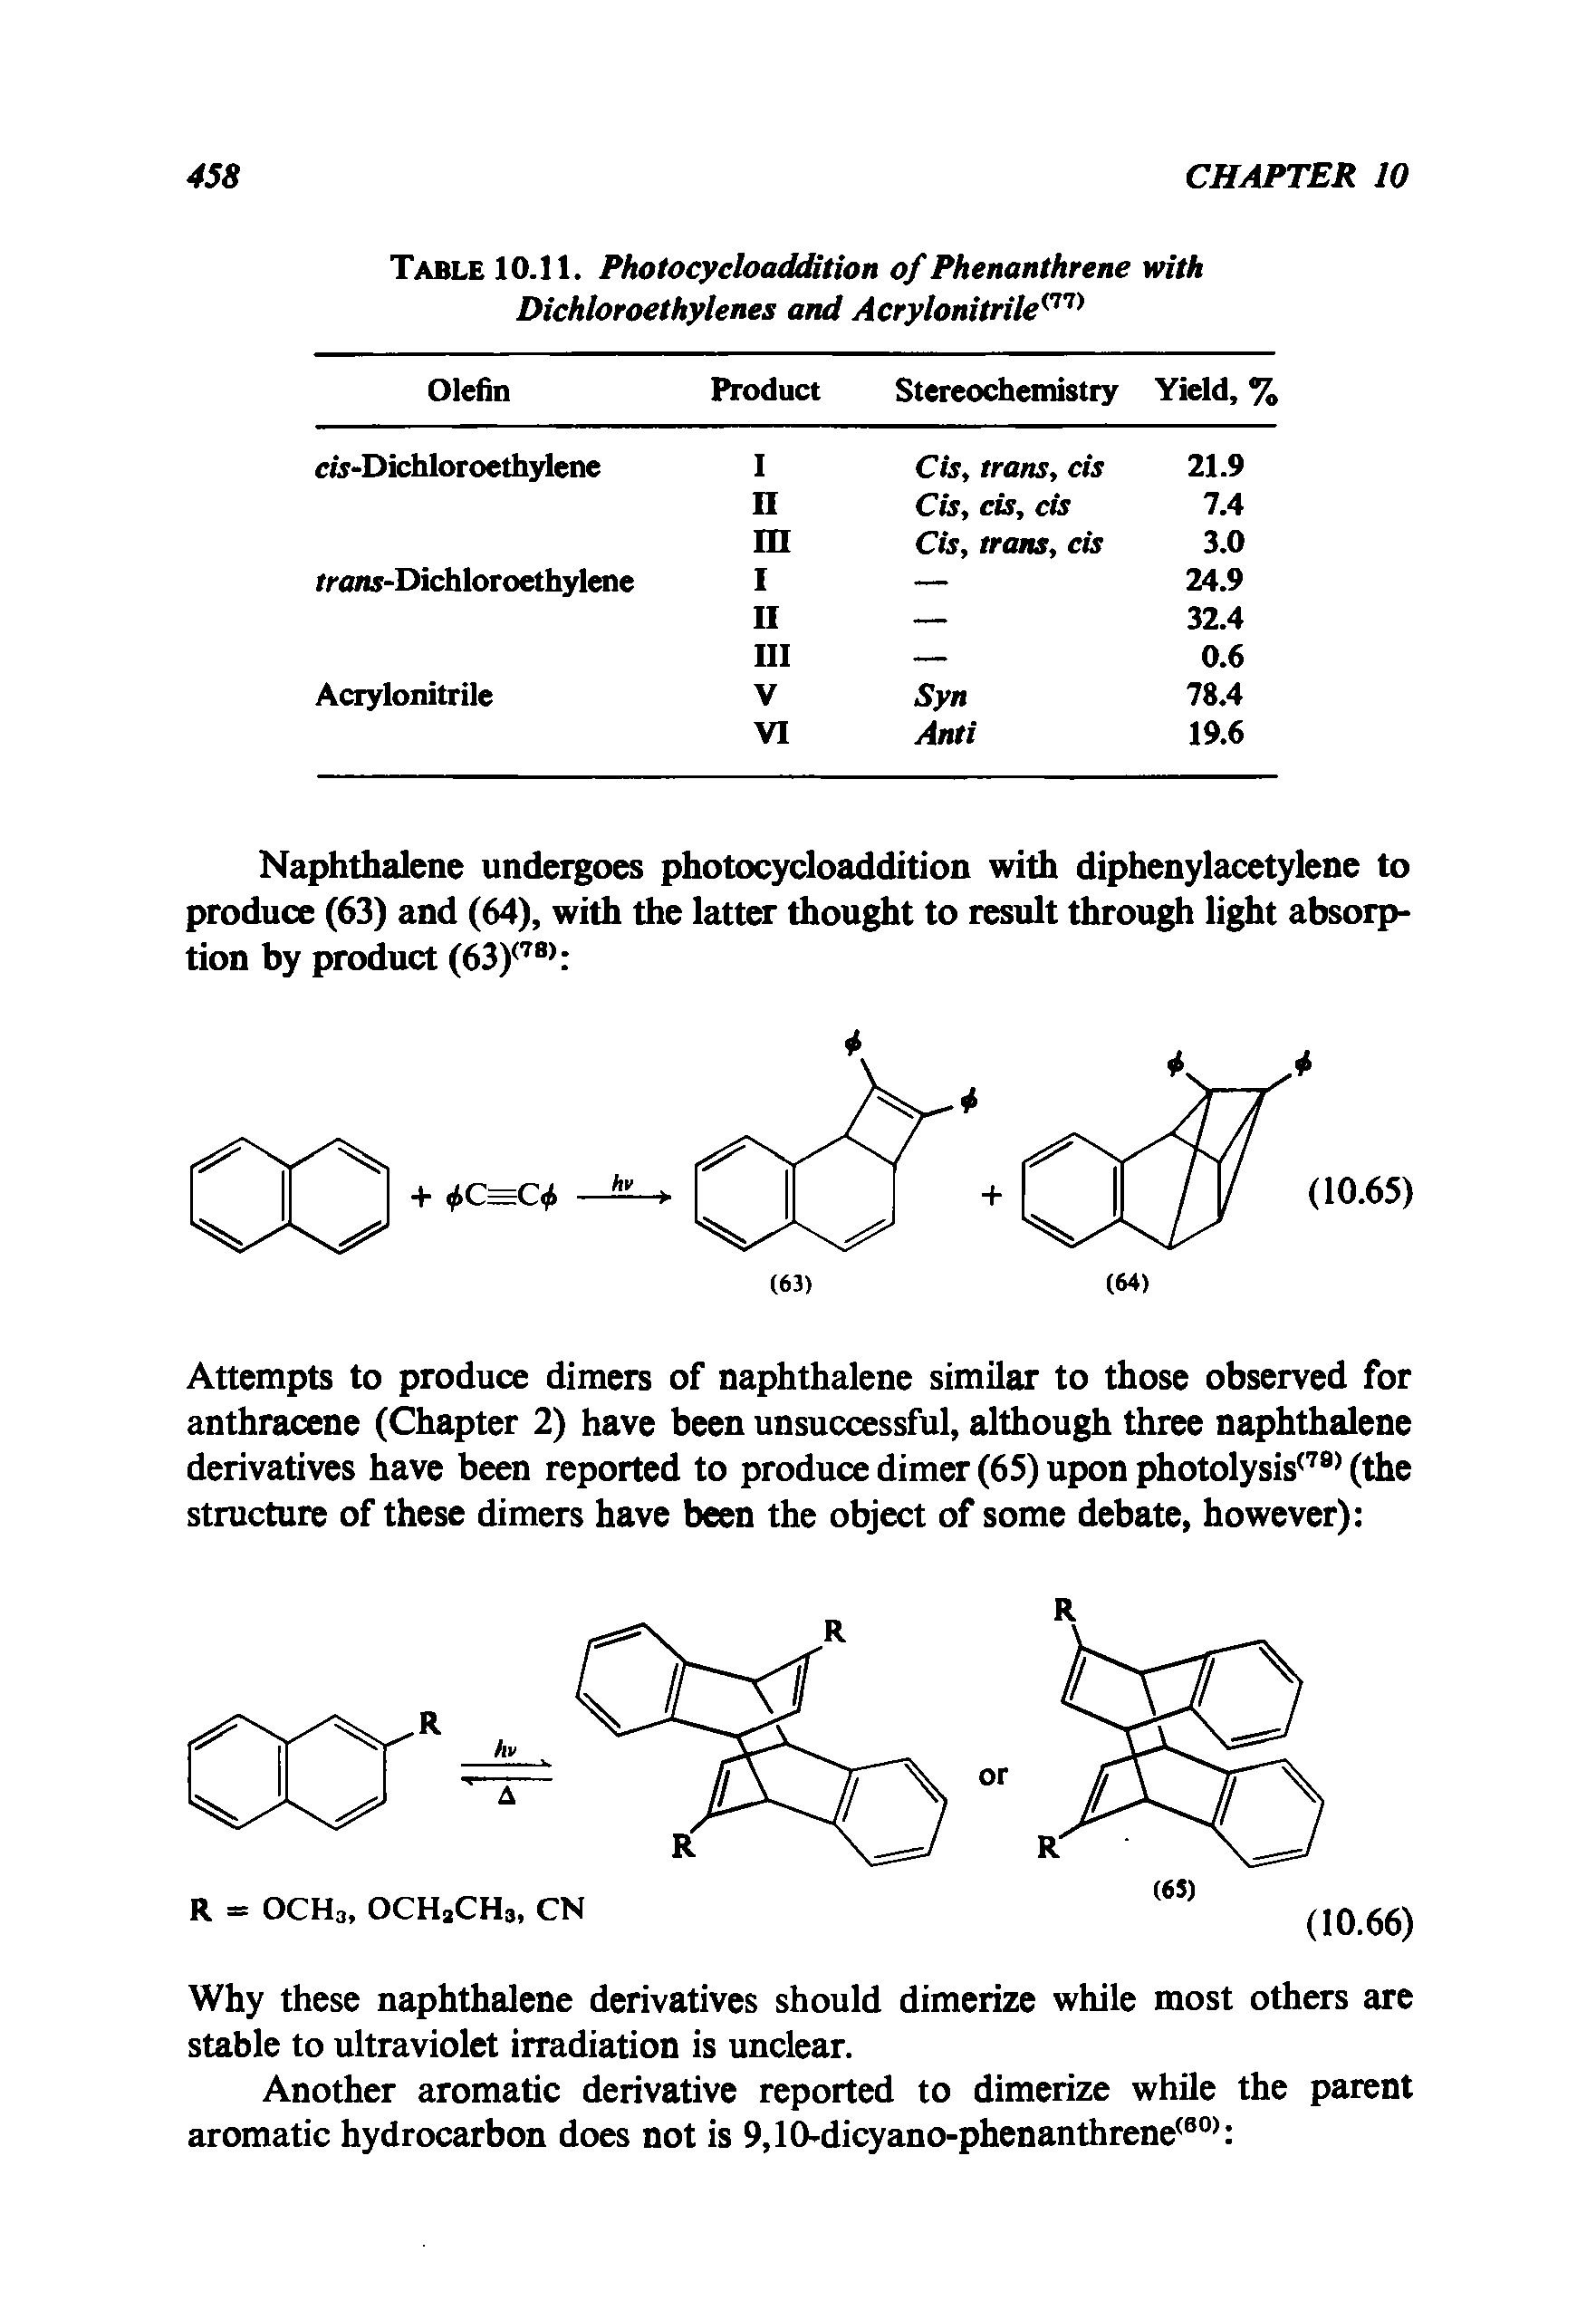 Table 10.11. Photocycloaddition of Phenanthrene with Dichloroethylenes and Acrylonitrile ...